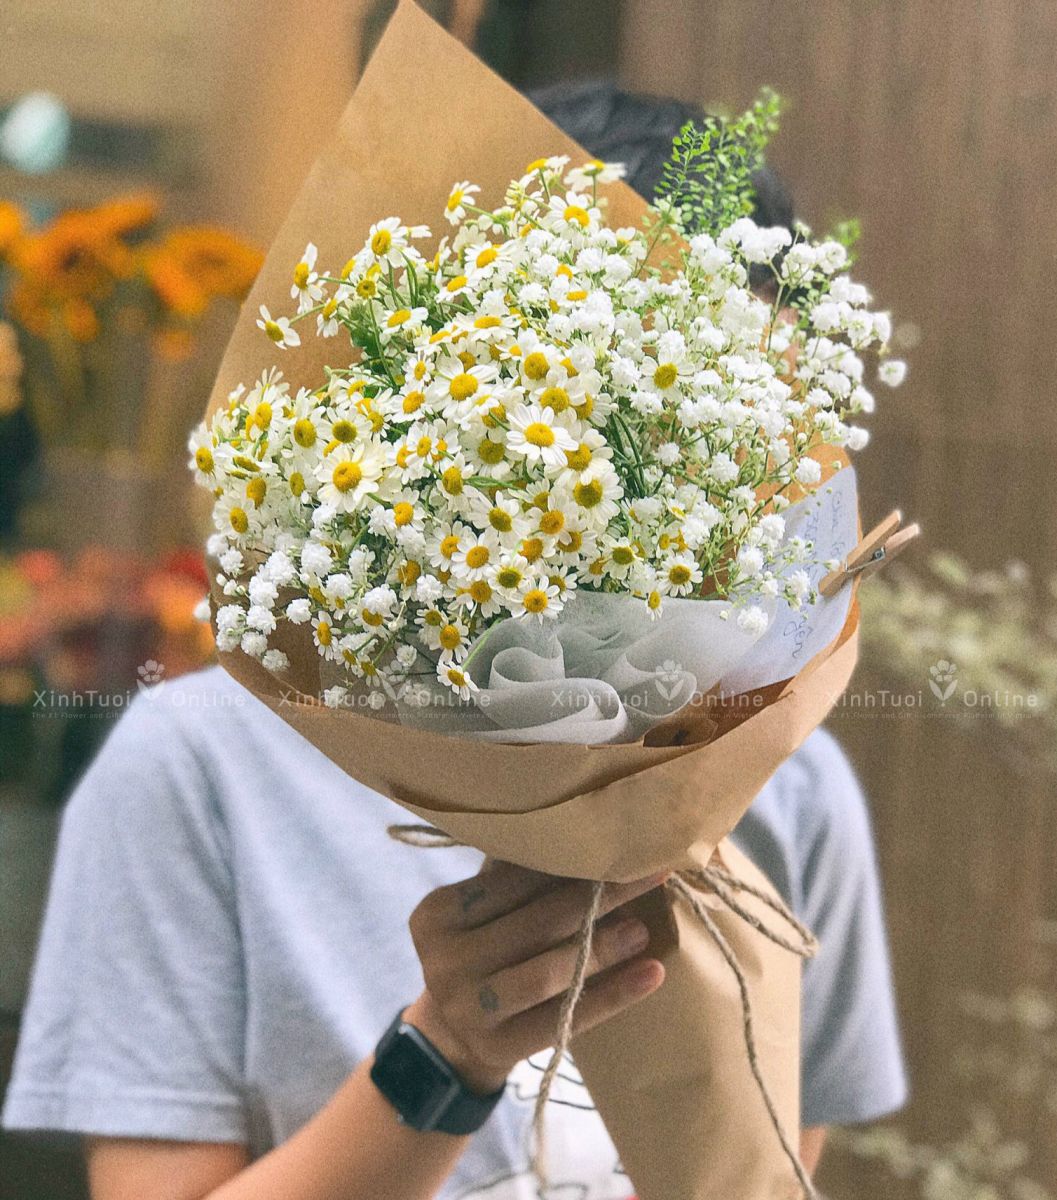 Cúc tana - Đóa hoa sinh nhật dễ thương tặng bạn gái